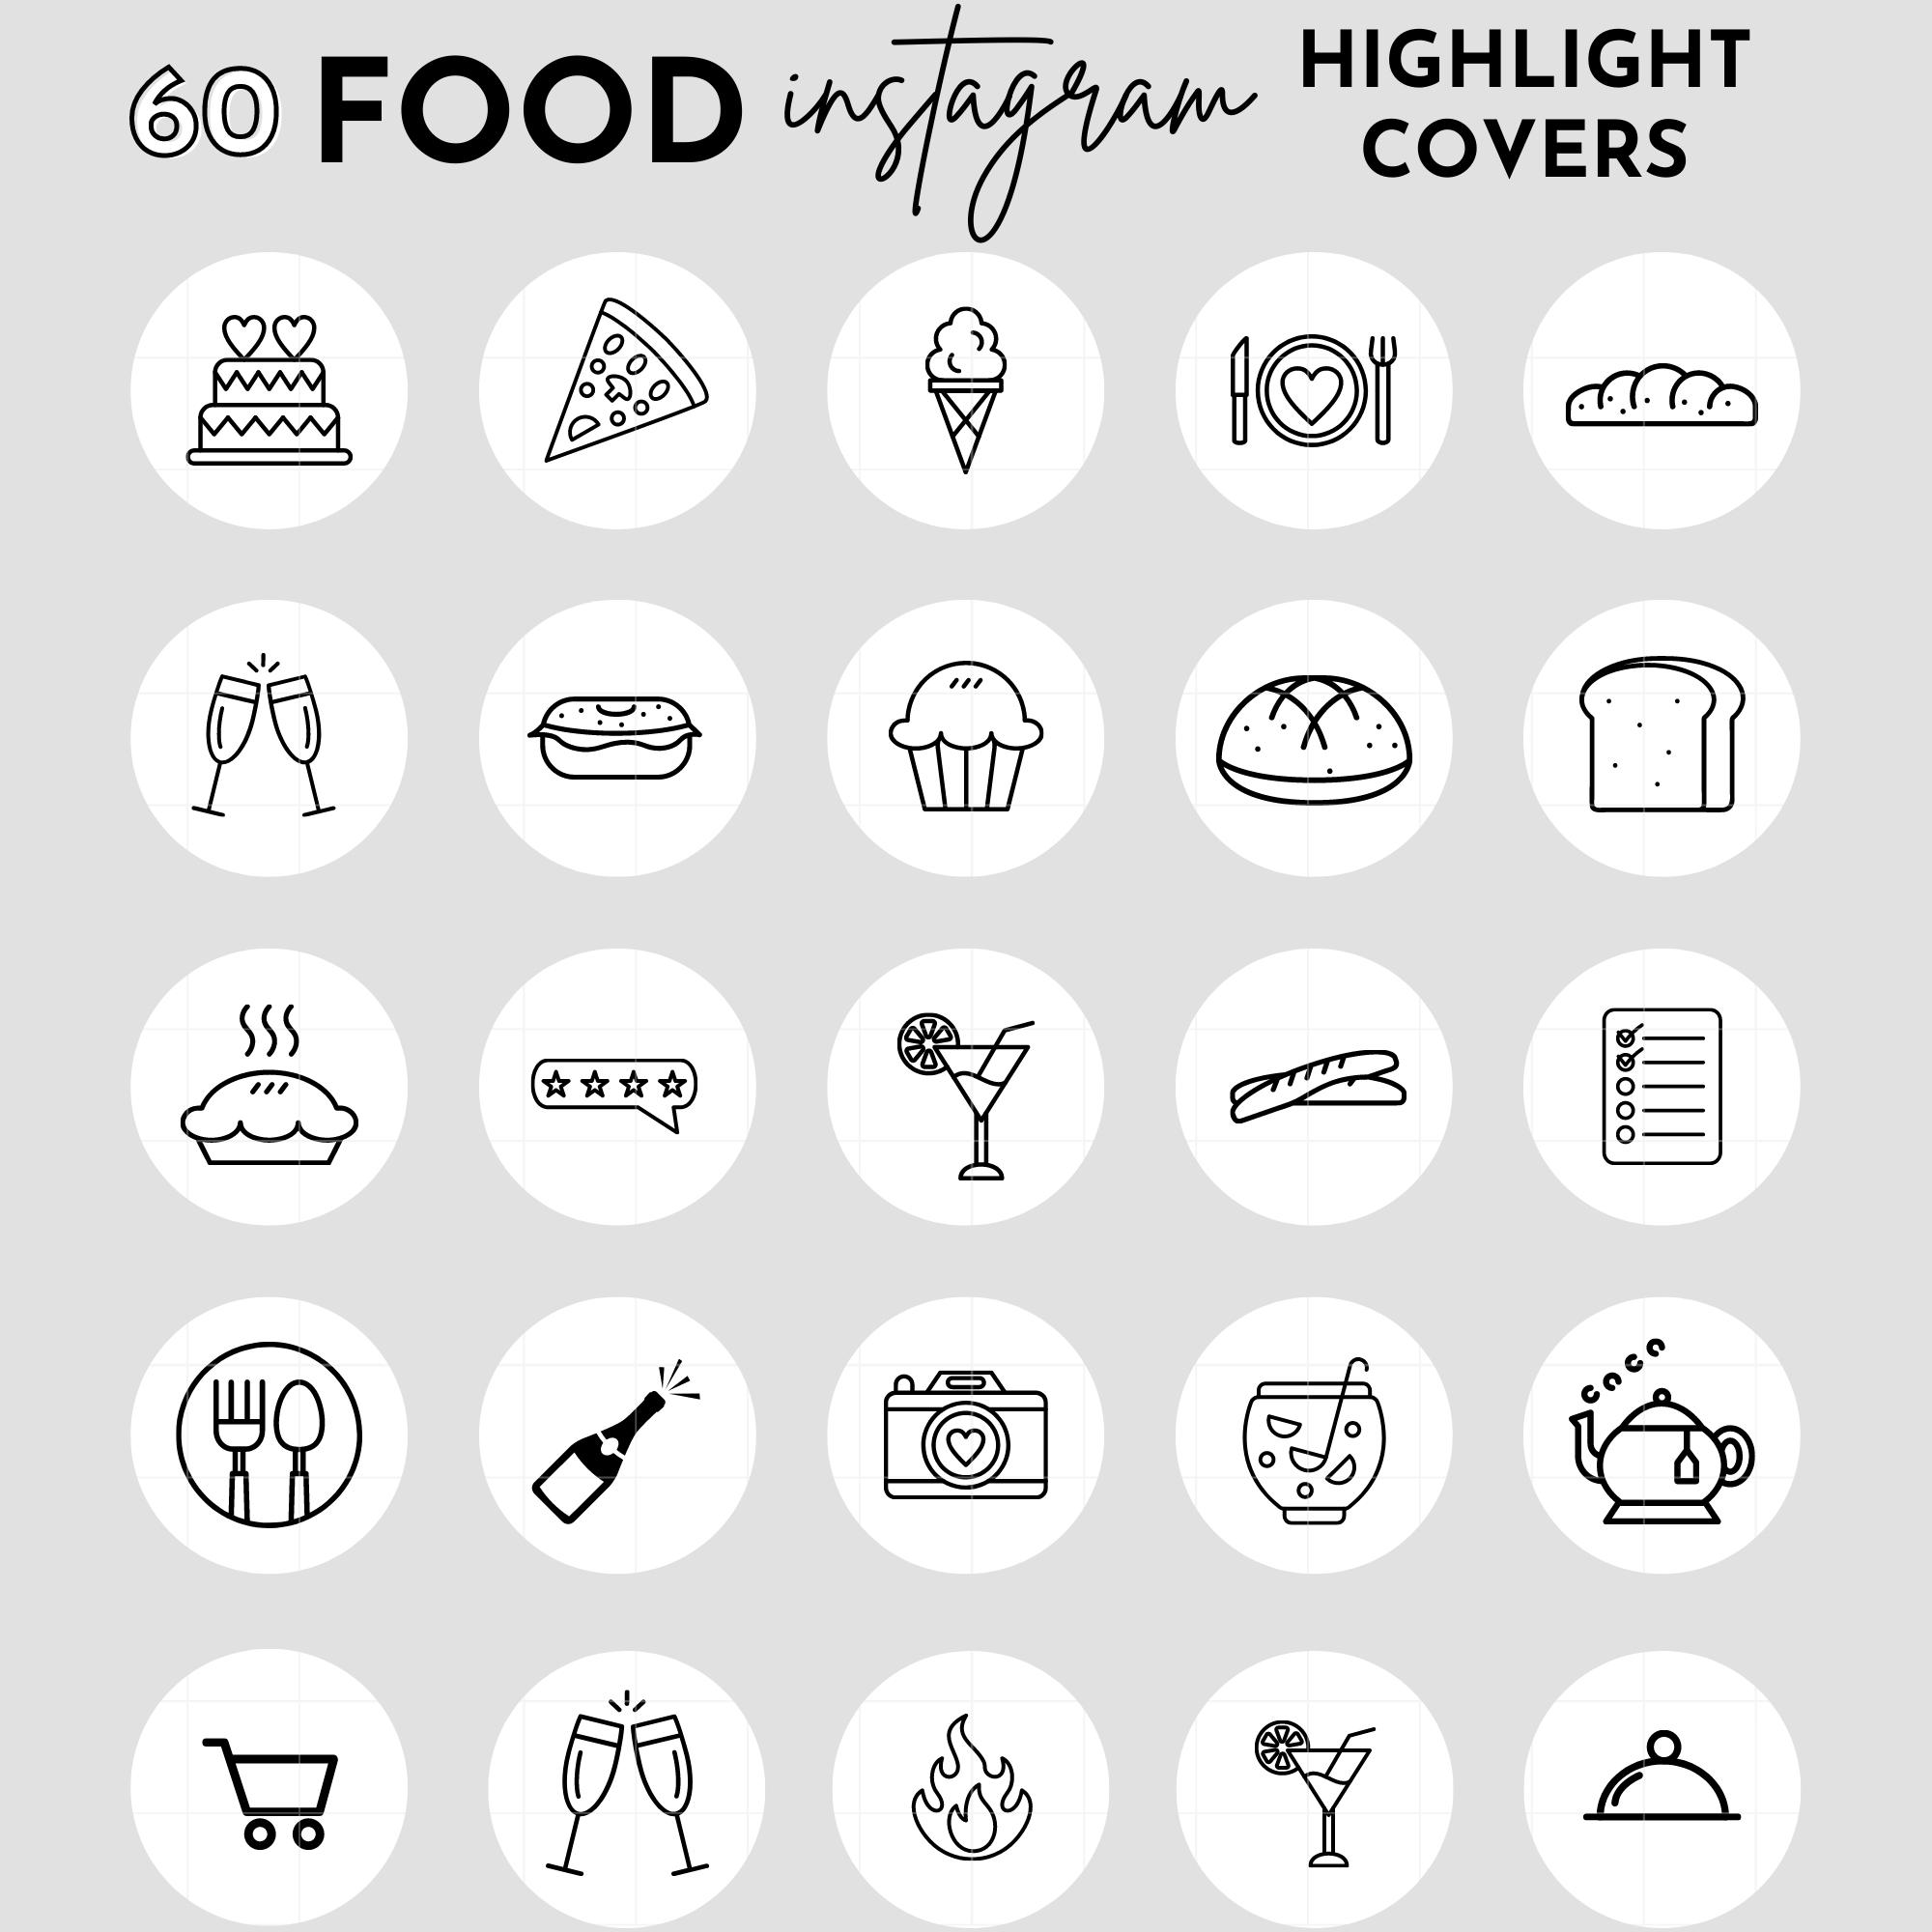 Highlight Cover Icons: Tiếp cận người dùng từ một góc độ khác biệt trên trang cá nhân của bạn với những thiết kế Highlight Cover Icons đầy sáng tạo. Với chúng, bạn sẽ đem đến cho người xem một khía cạnh mới mẻ và thu hút hơn.